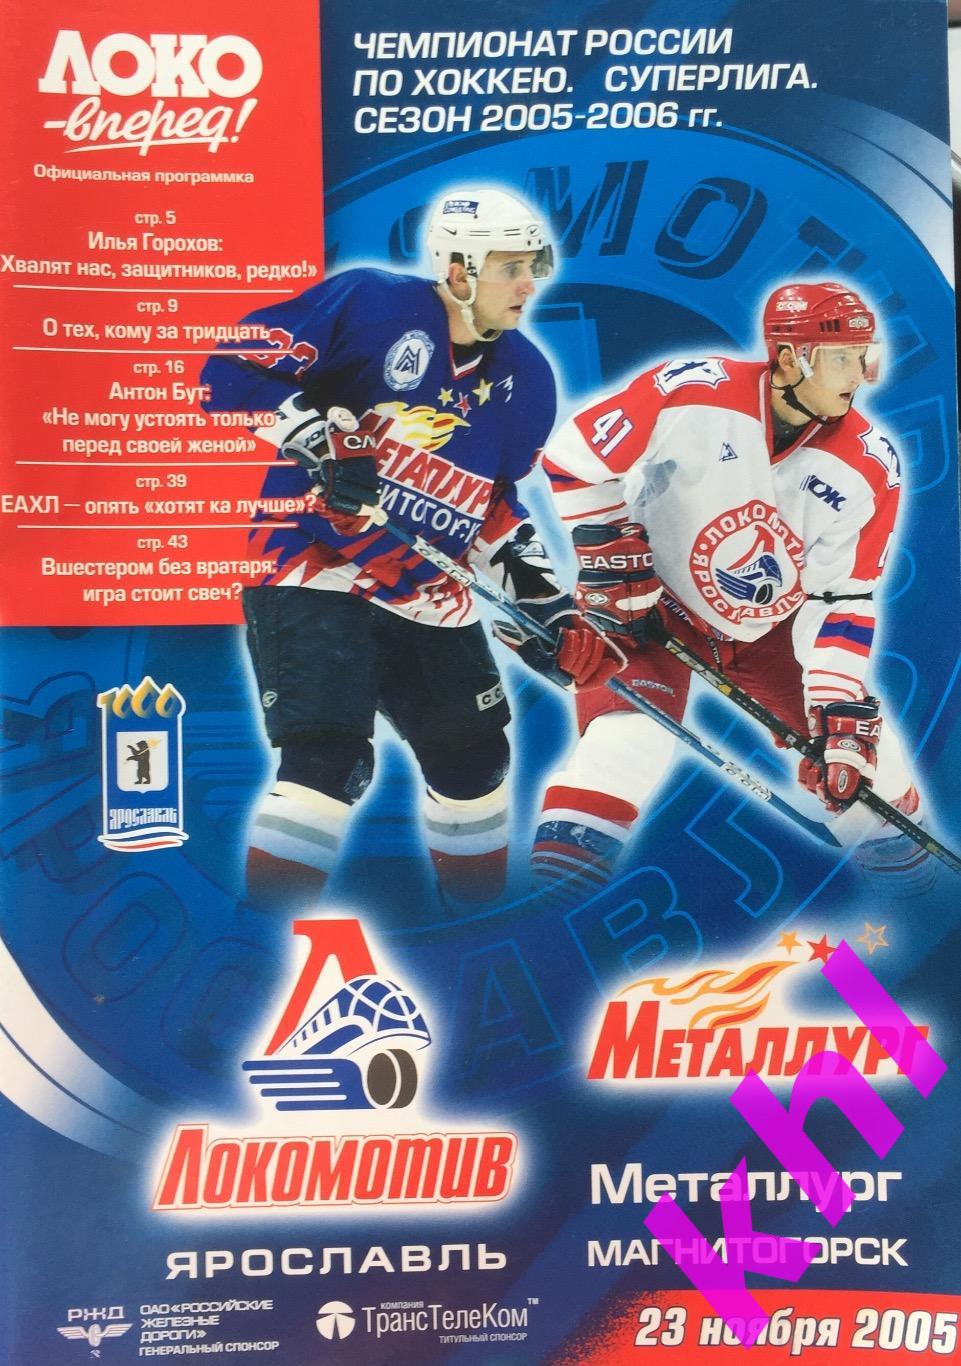 Локомотив Ярославль - Металлург Магнитогорск 23 ноября 2005 постер Жуков Сергей